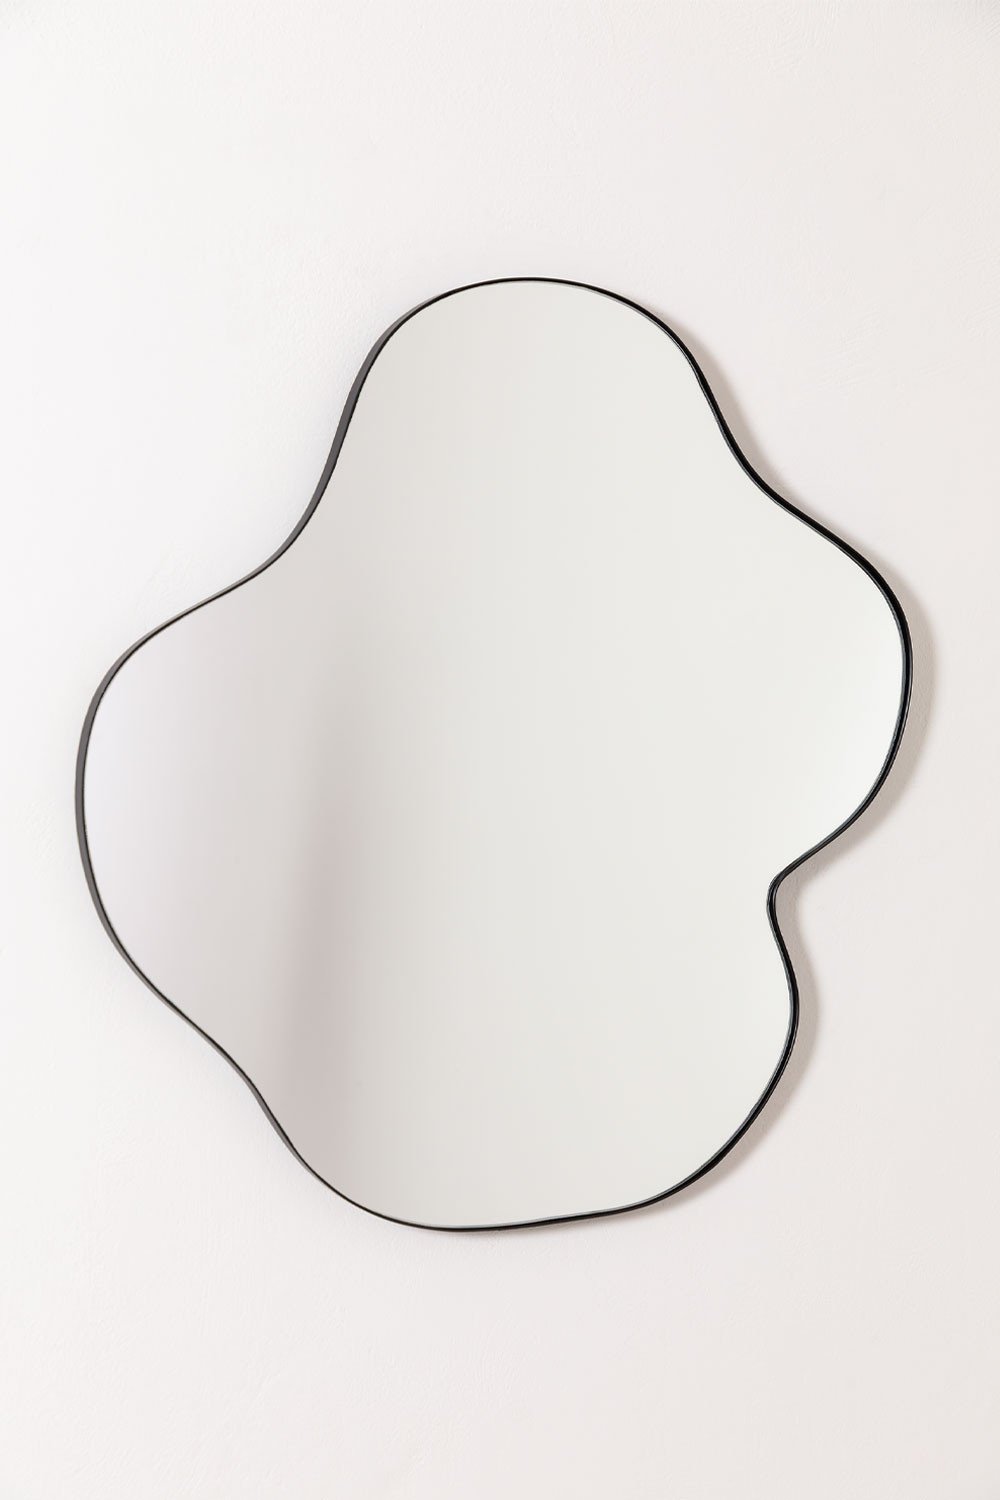 Specchio da parete in metallo (67x60 cm) Astrid, immagine della galleria 2